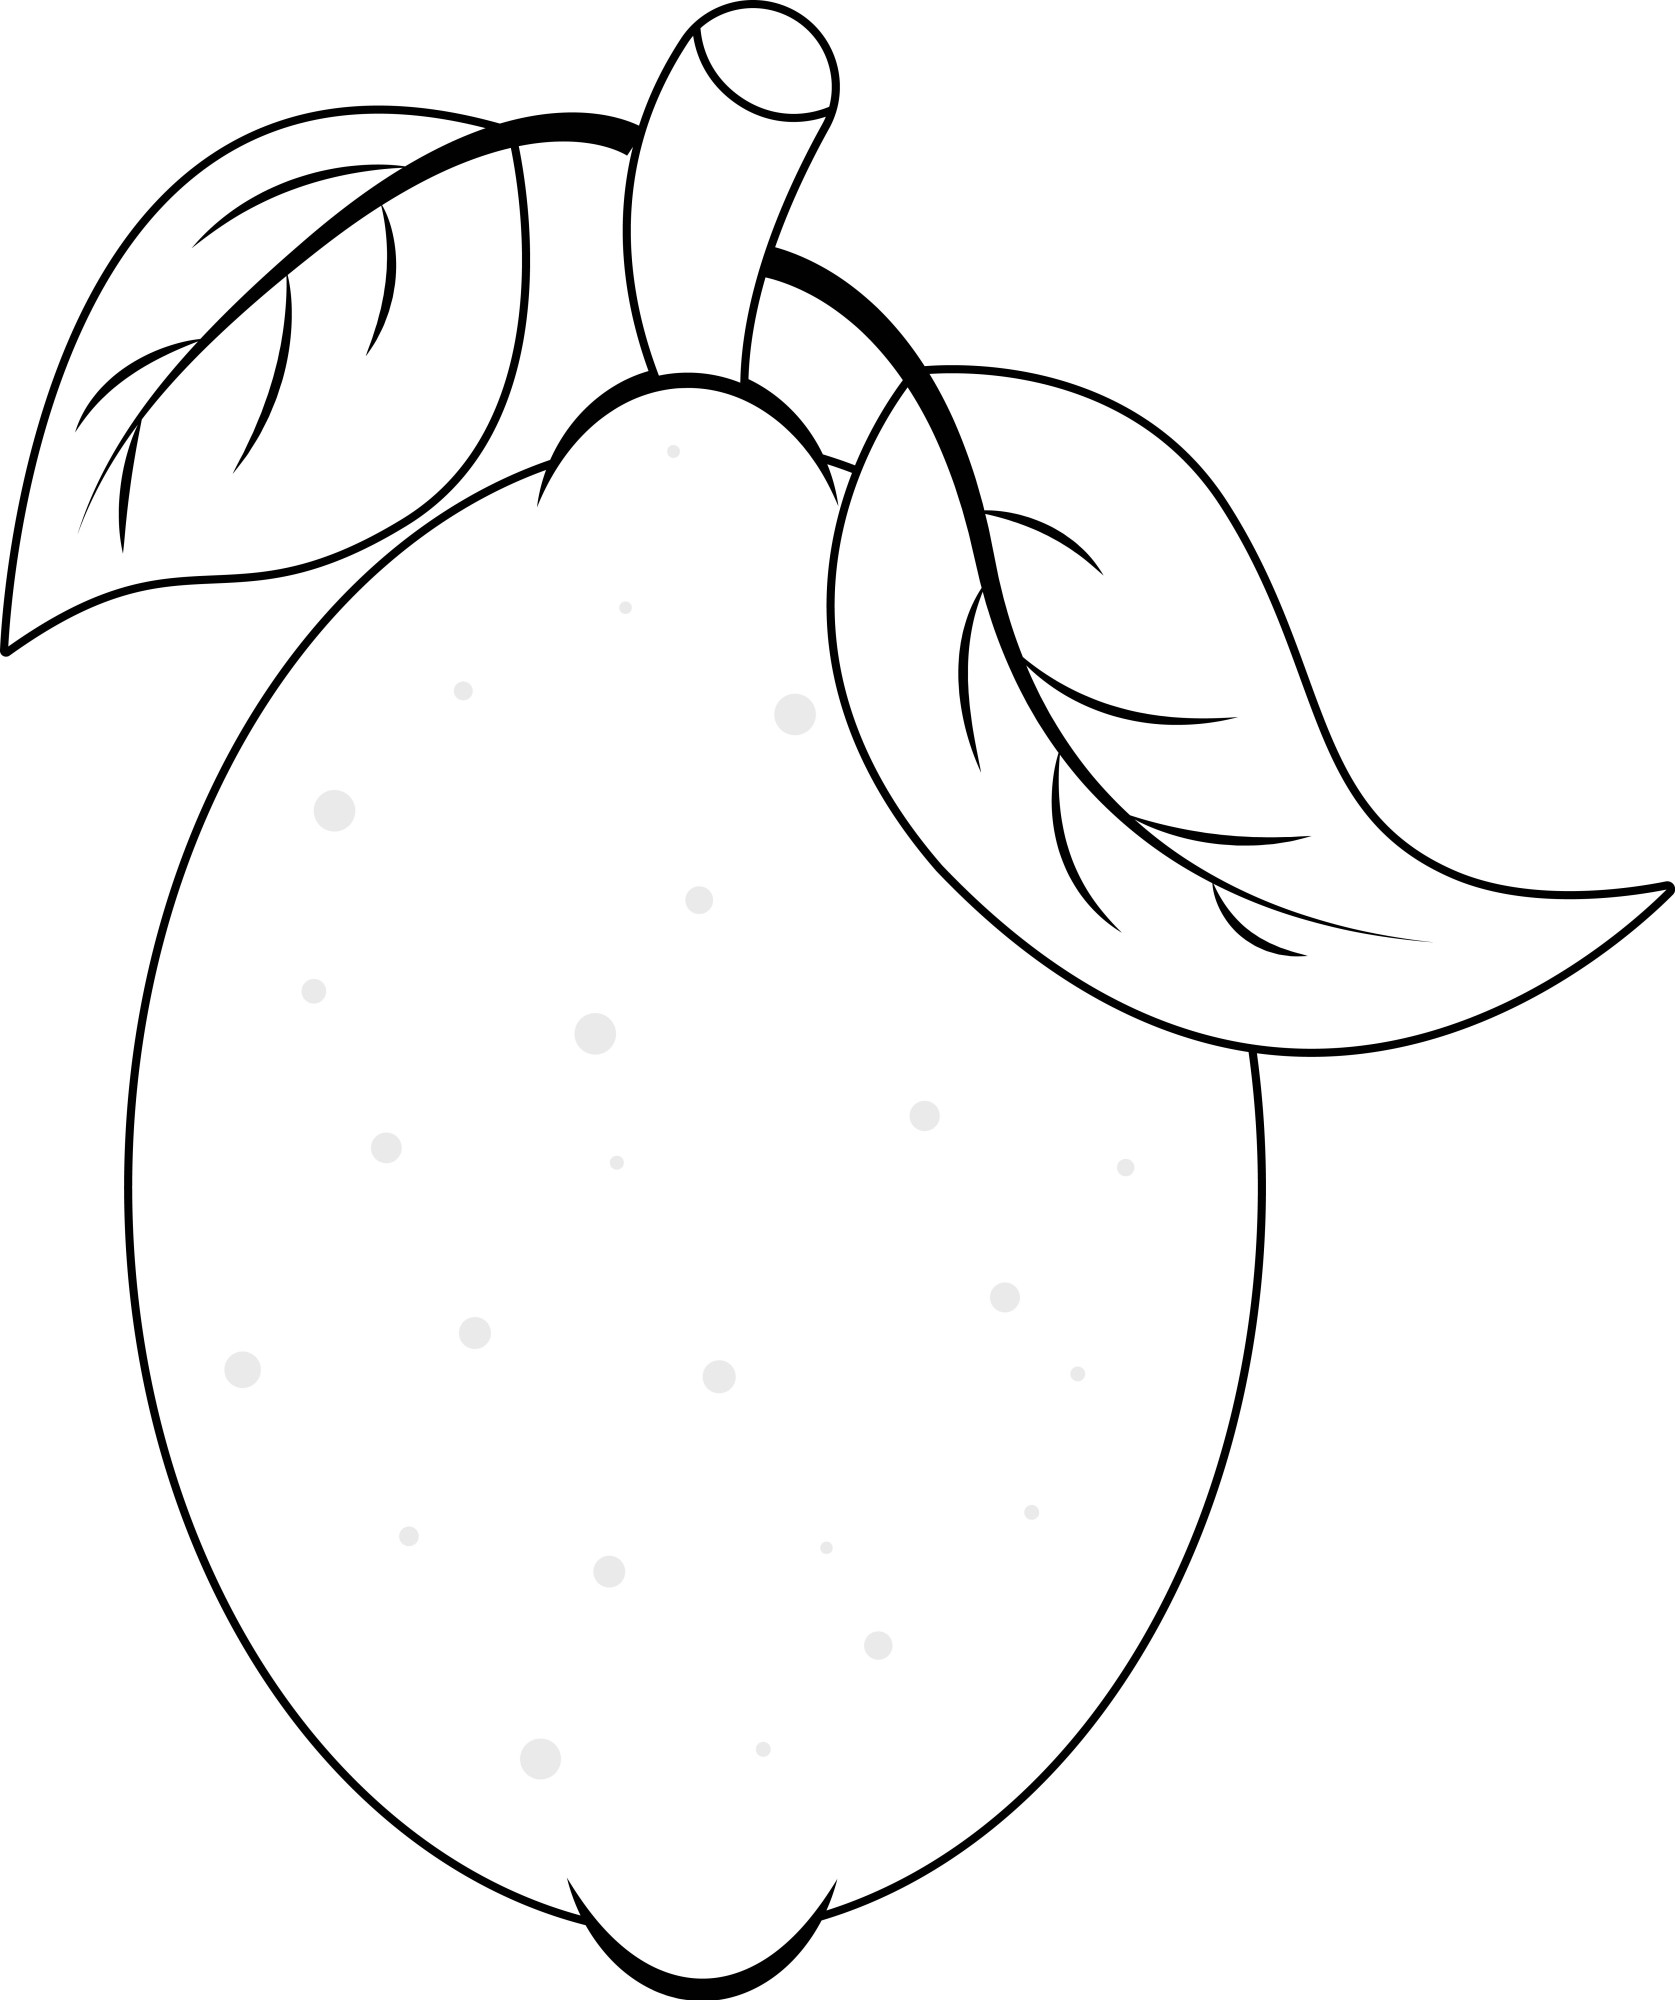 Раскраска для детей: лимон с листиками на ветке